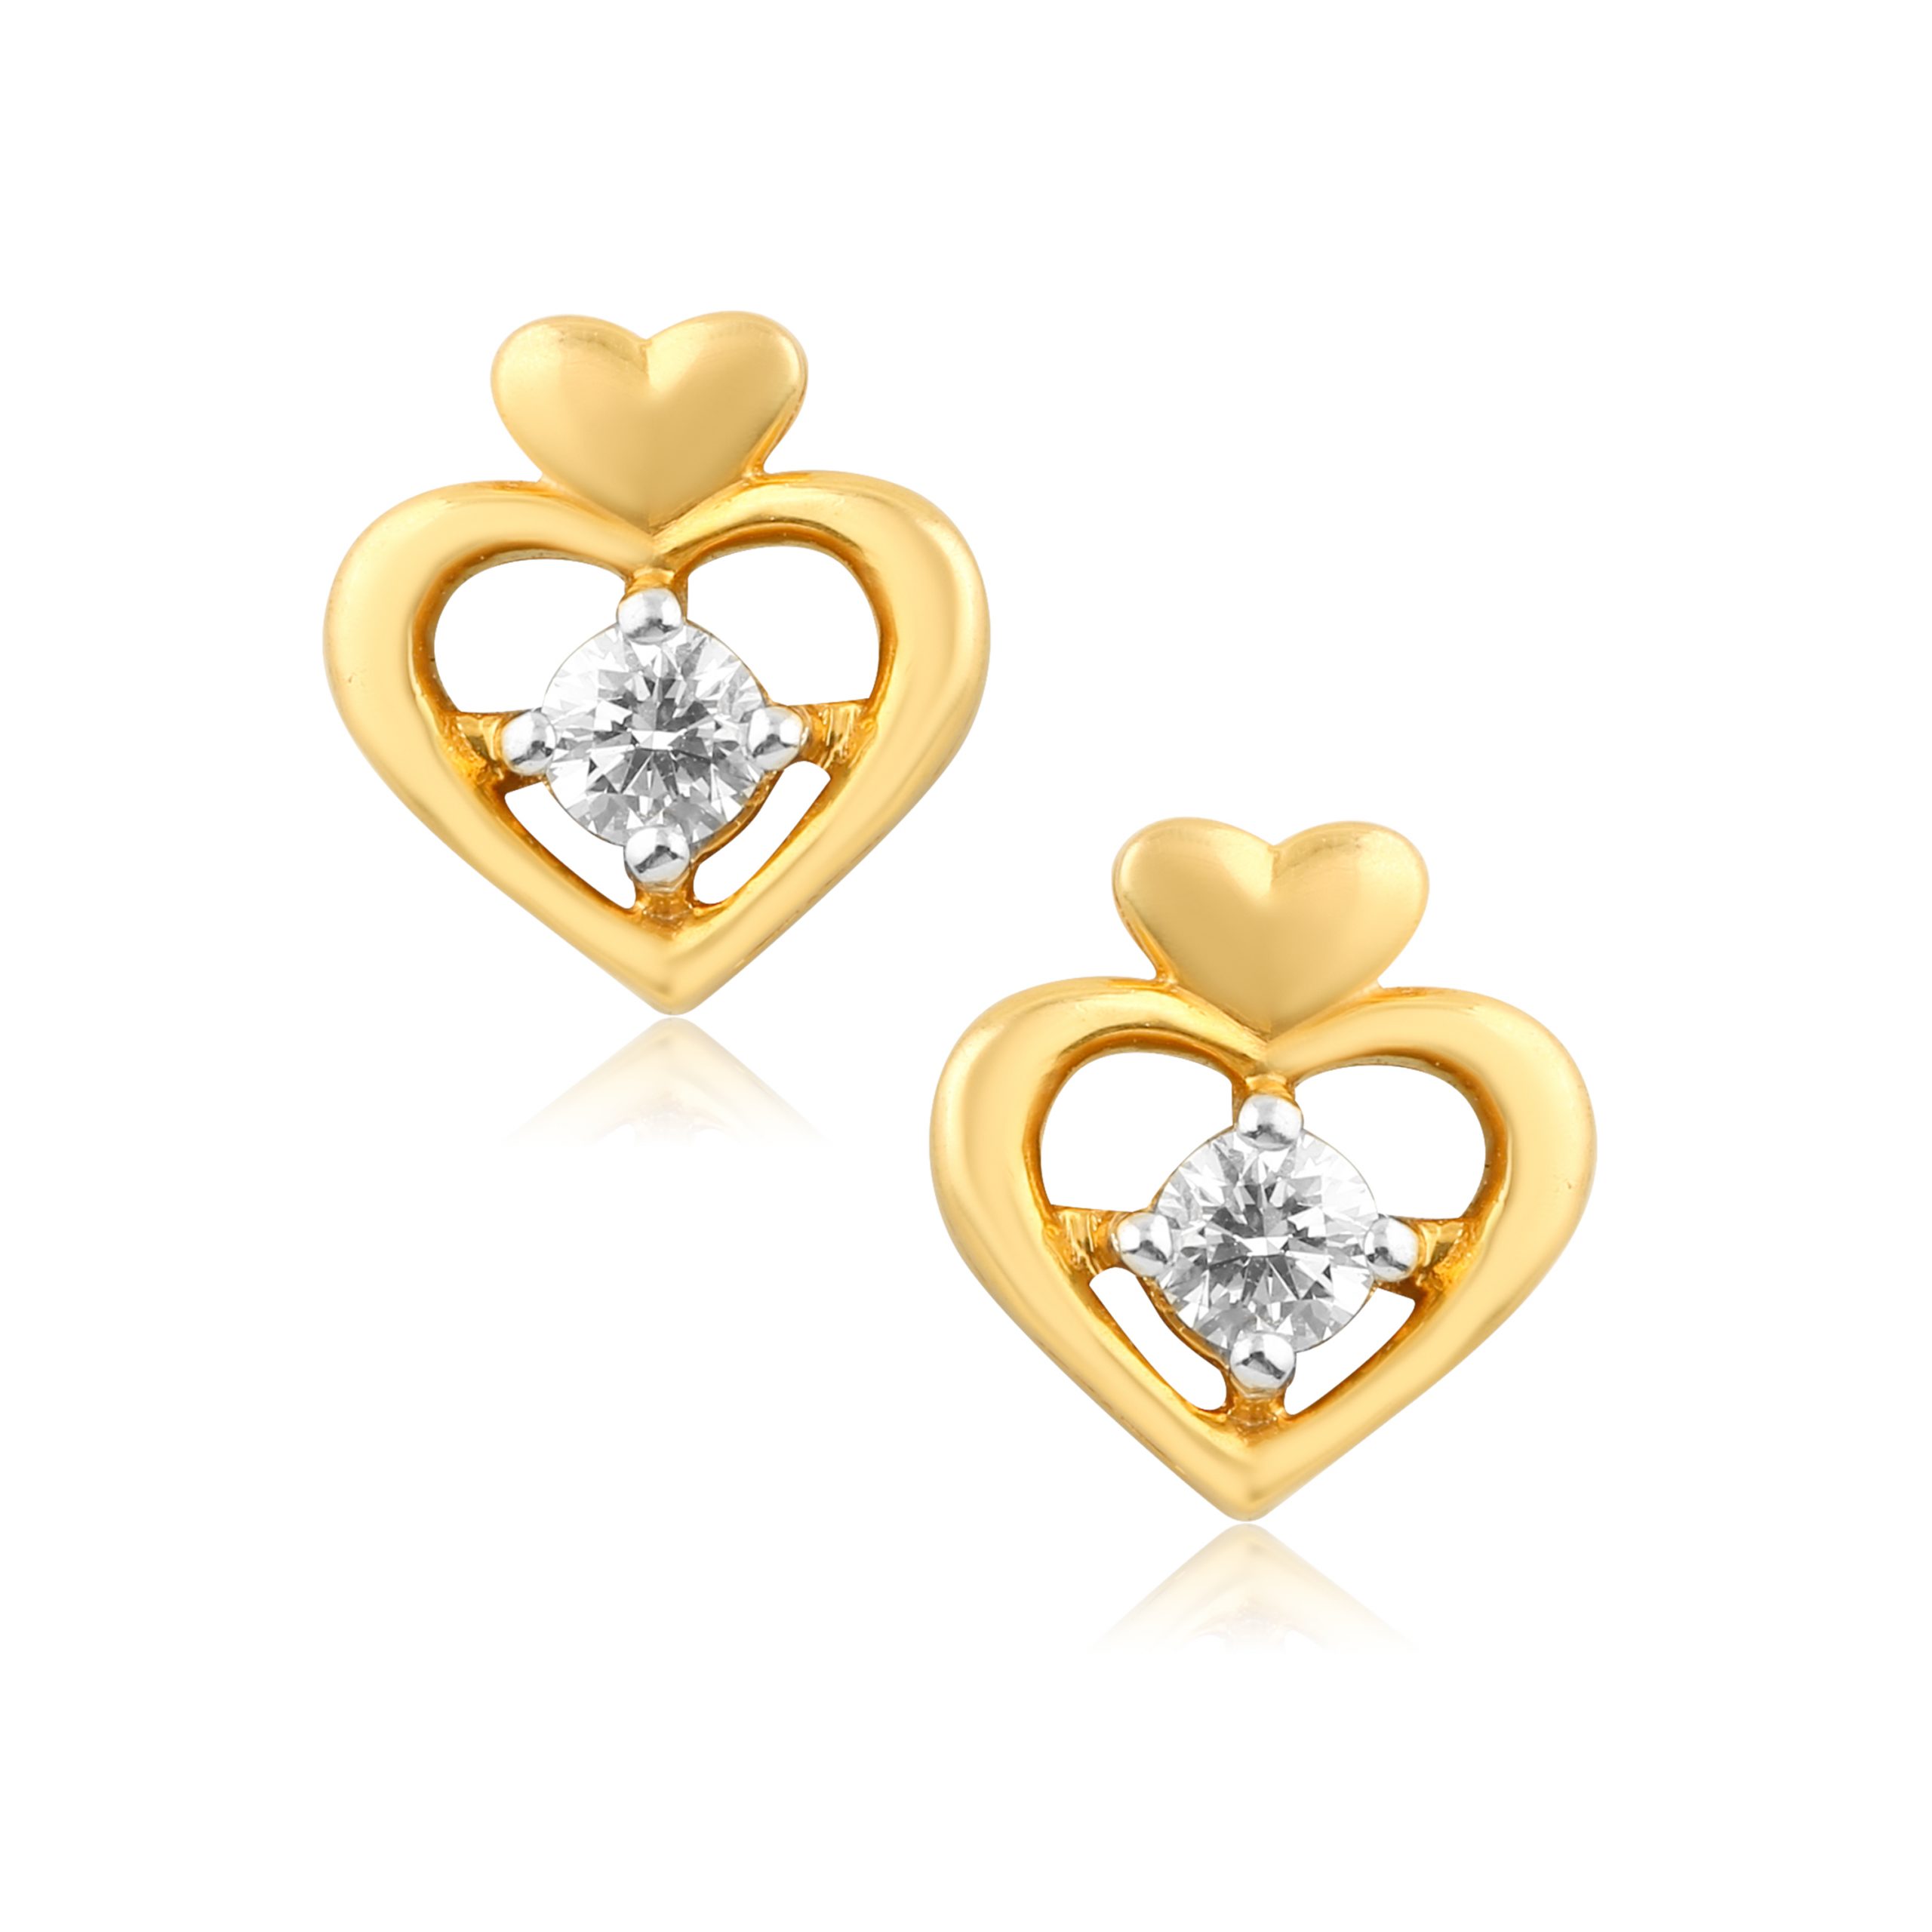 Double Heart 18 Karat Gold & Diamond Stud Earrings